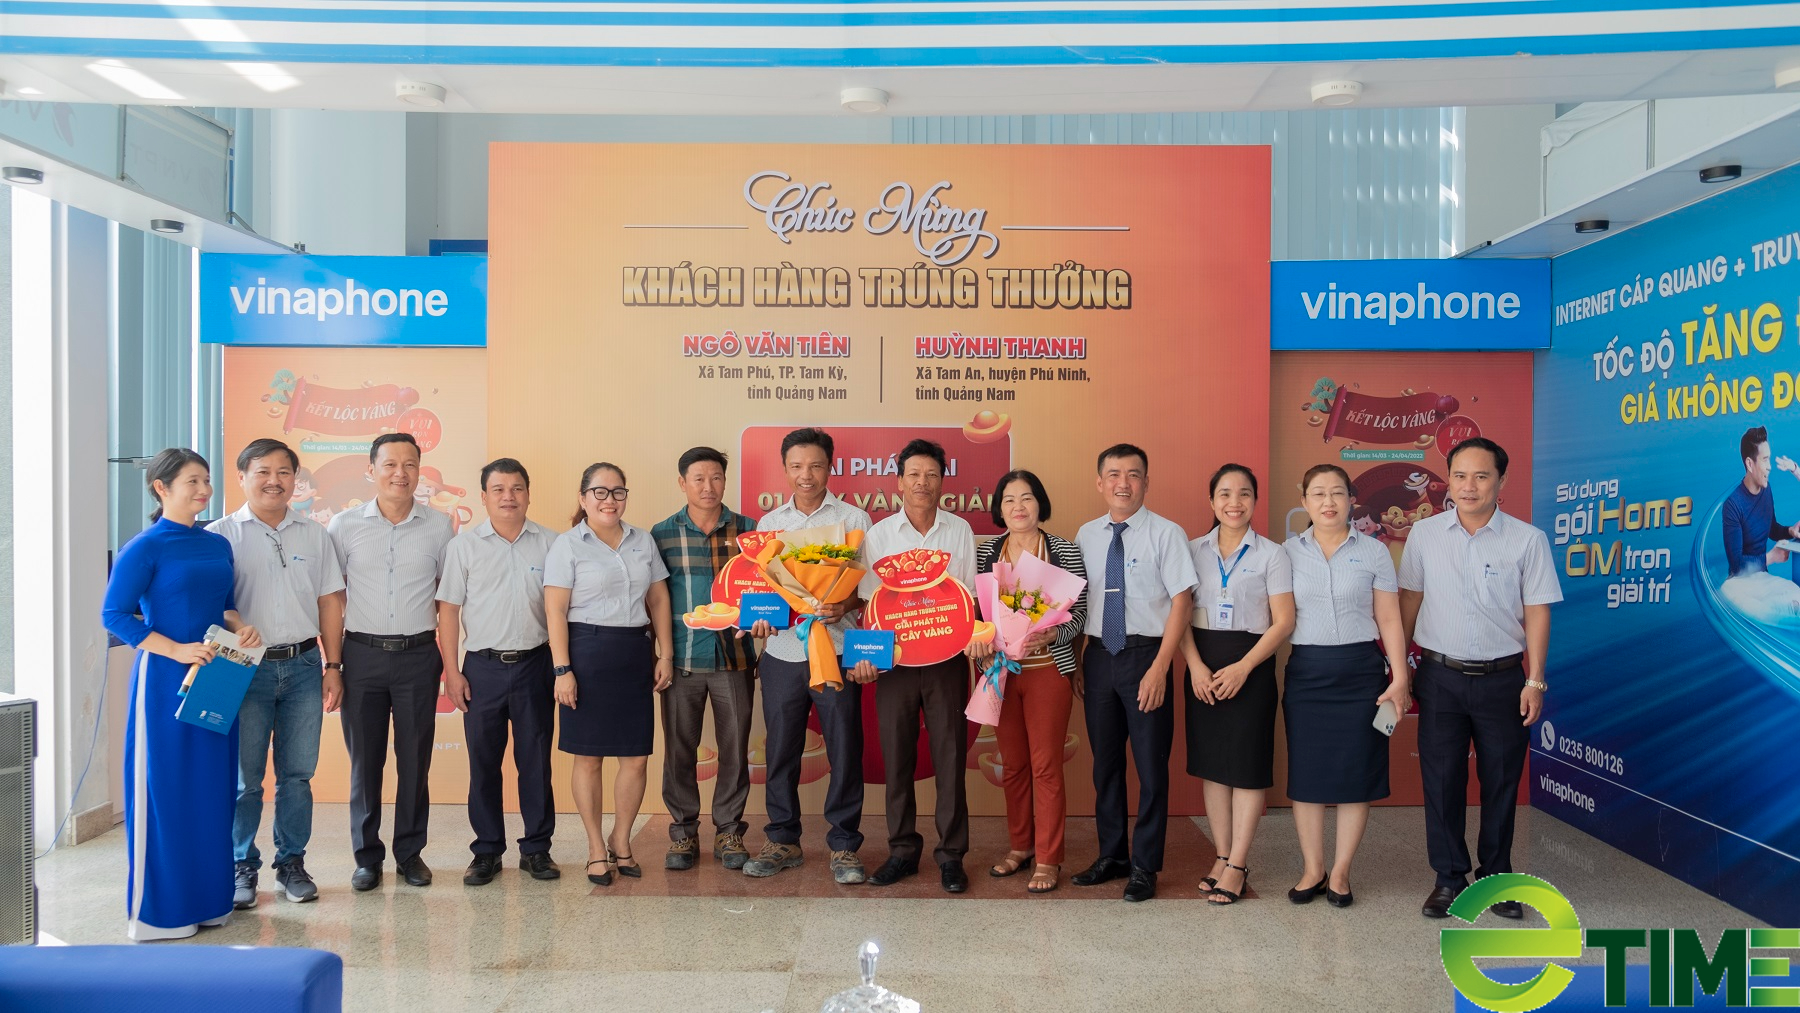 Khách hàng ở Quảng Nam trúng 2 cây vàng SJC 9999 của VinaPhone, trị giá gần 140 triệu đồng - Ảnh 1.